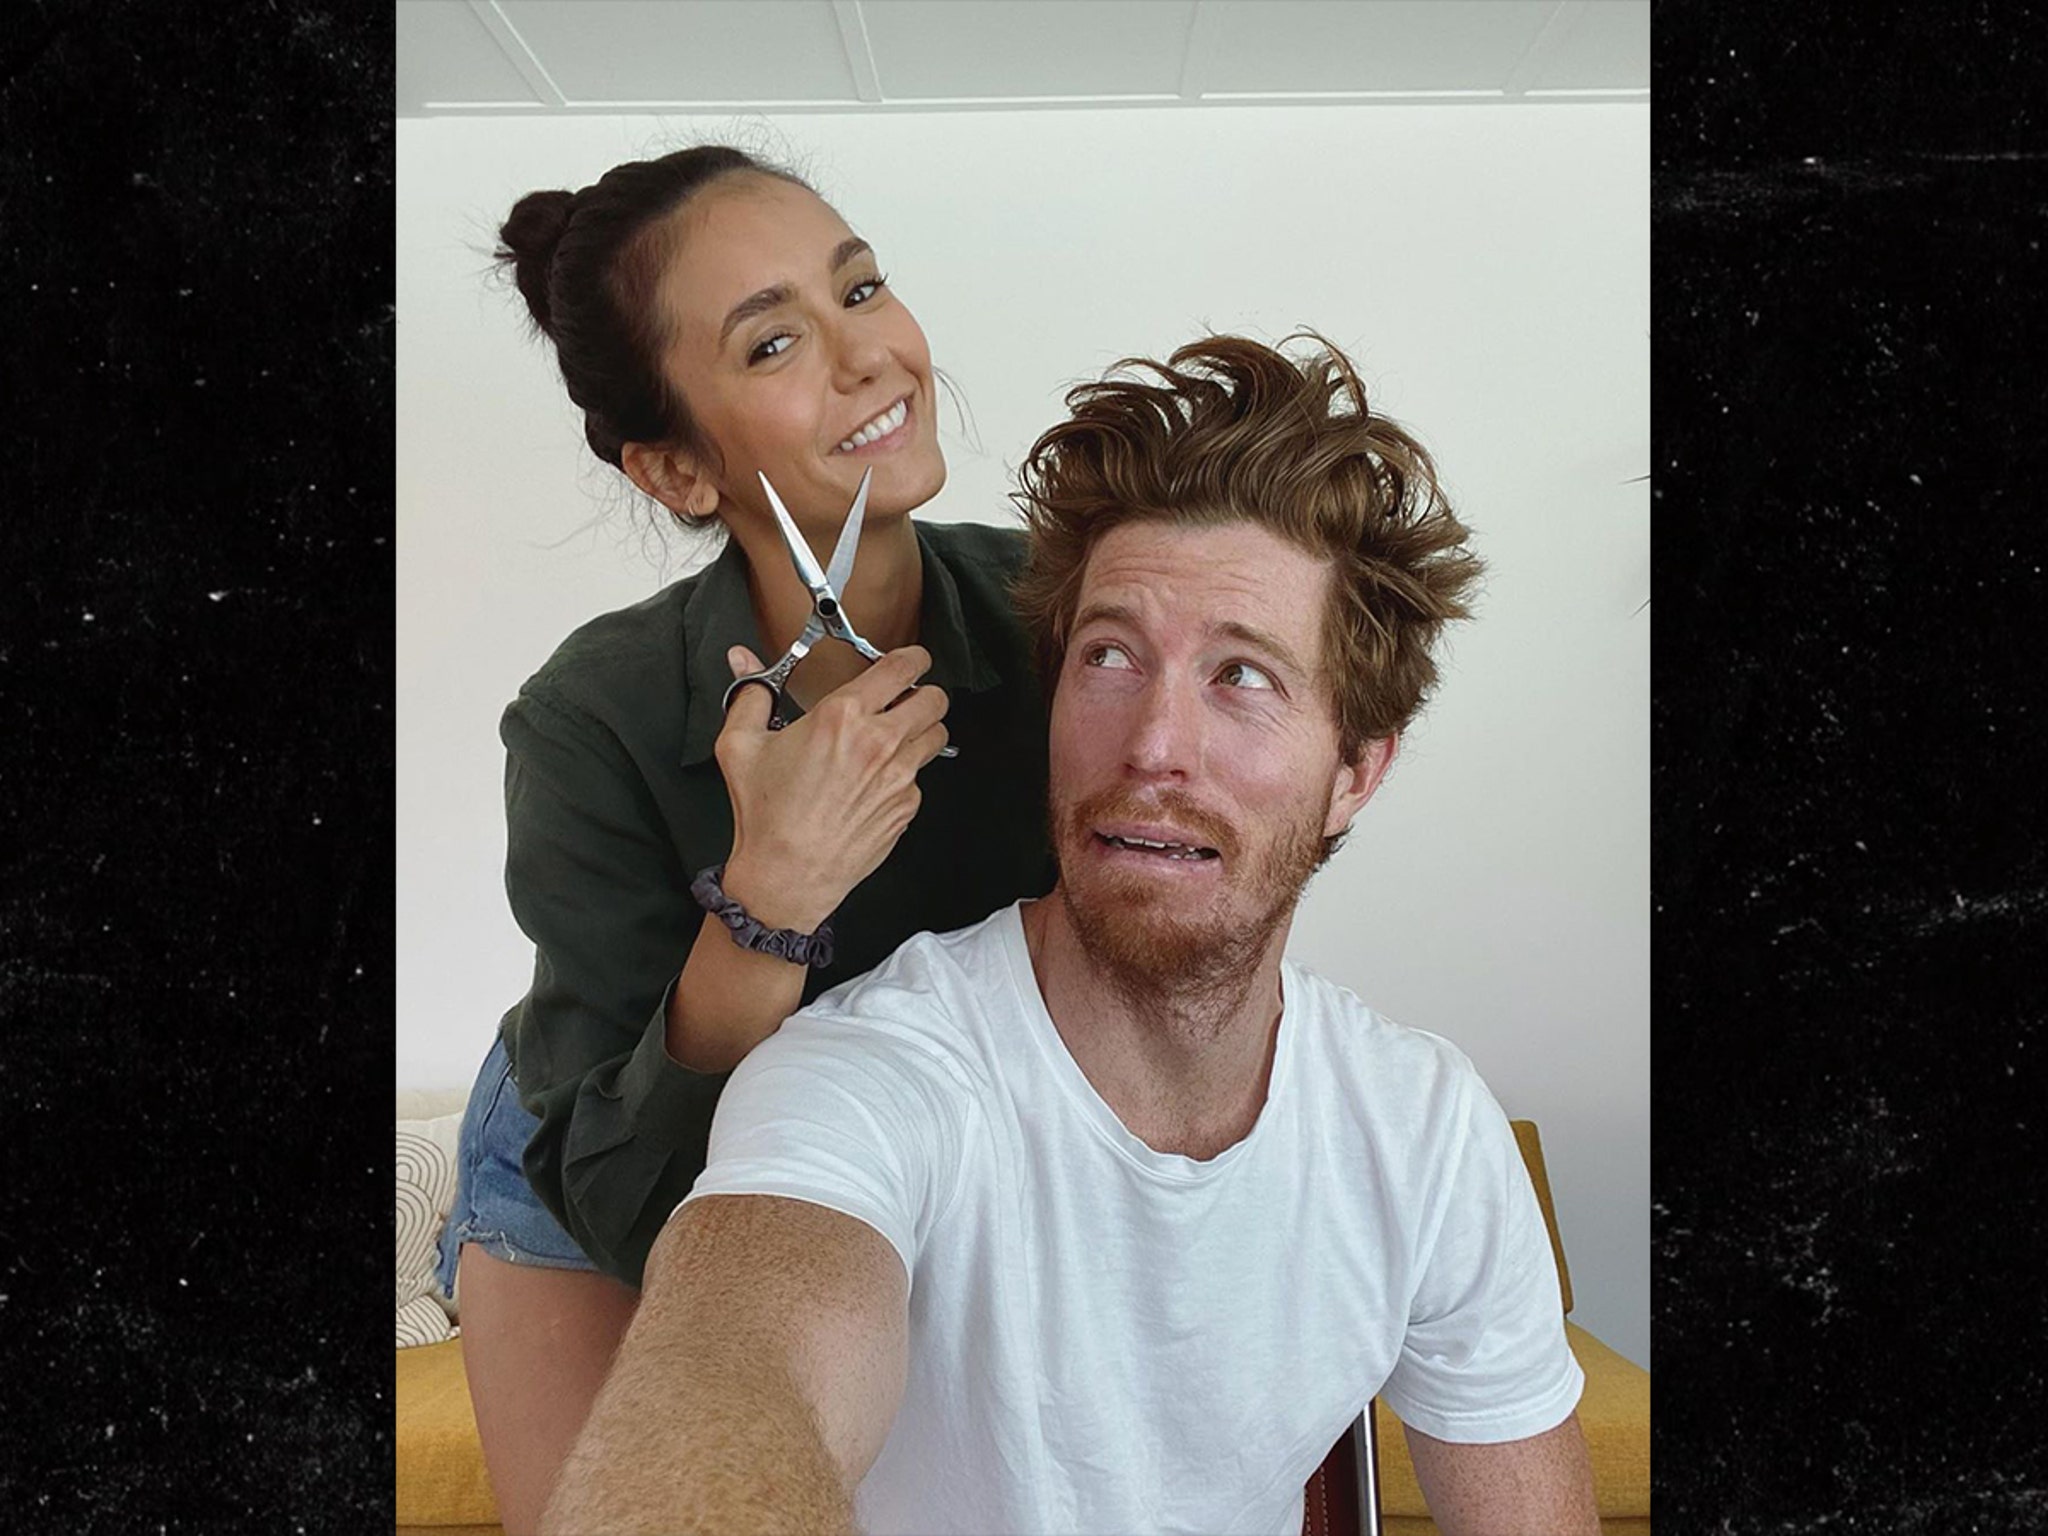 Nina Dobrev Cuts Shaun White's Hair in Couple's Instagram Debut